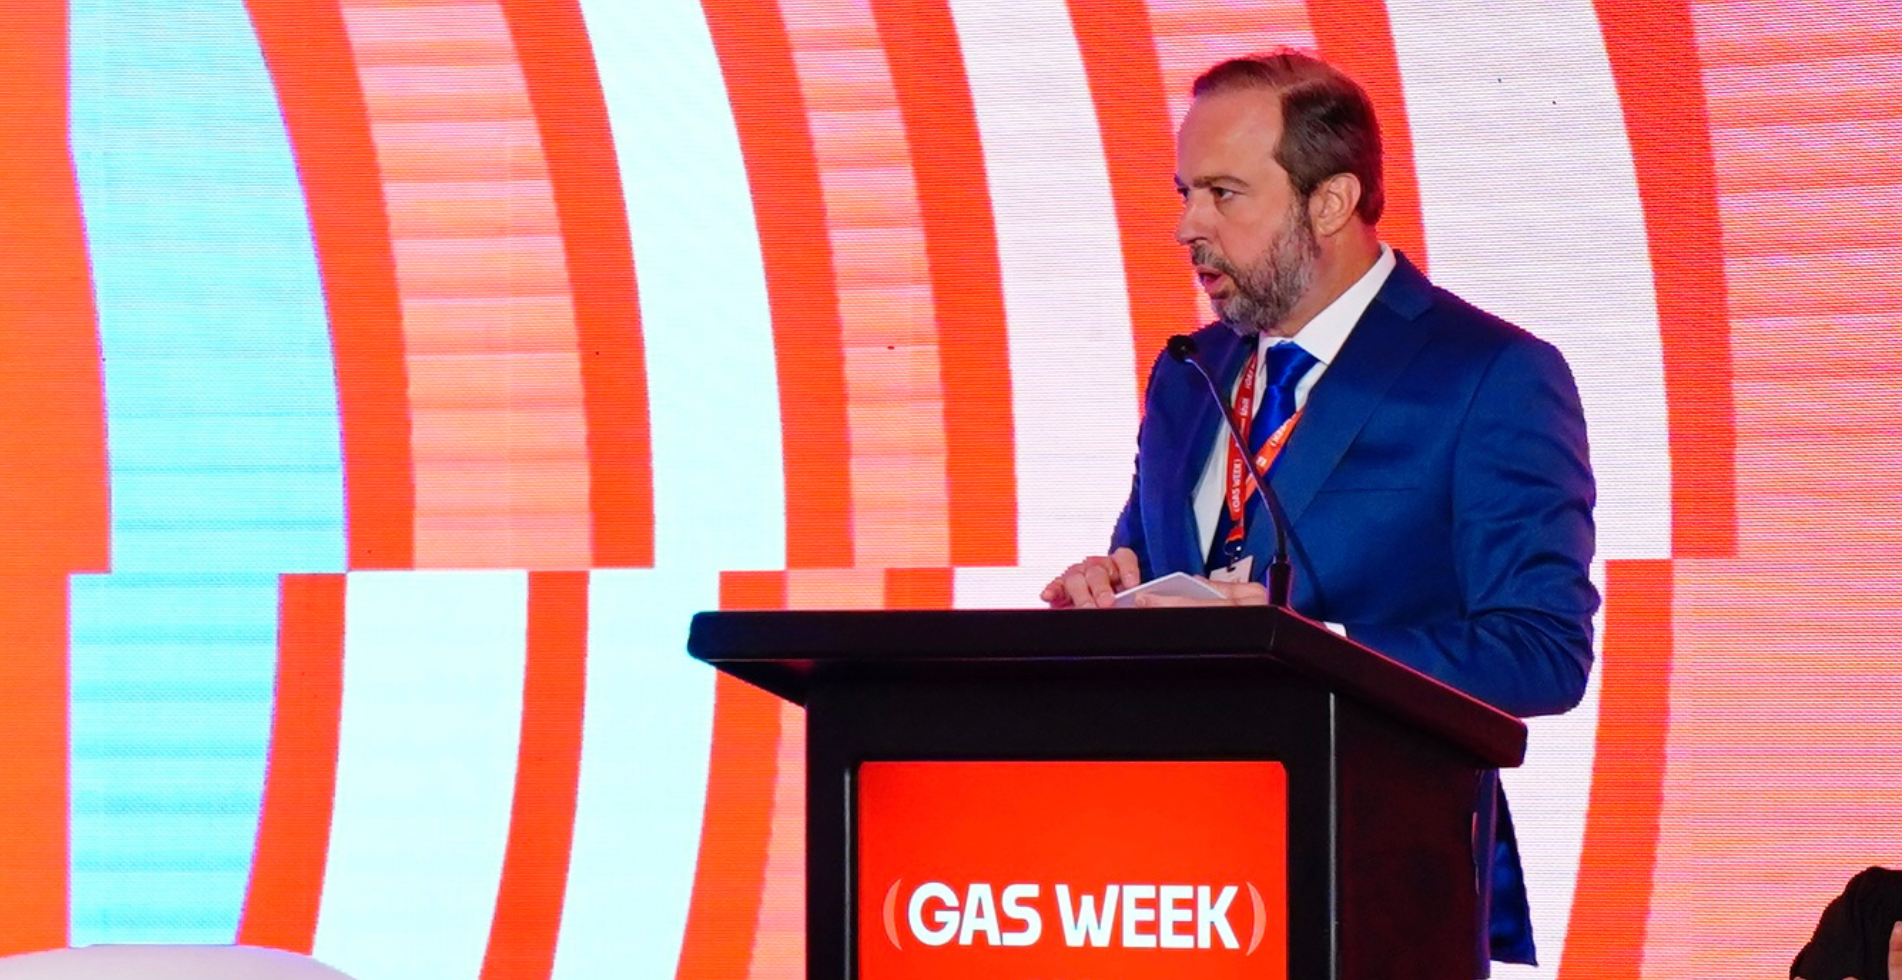 Objetivo é aumentar a oferta de gás a preços justos e competitivos, alavancando o crescimento desse mercado e da indústria nacional